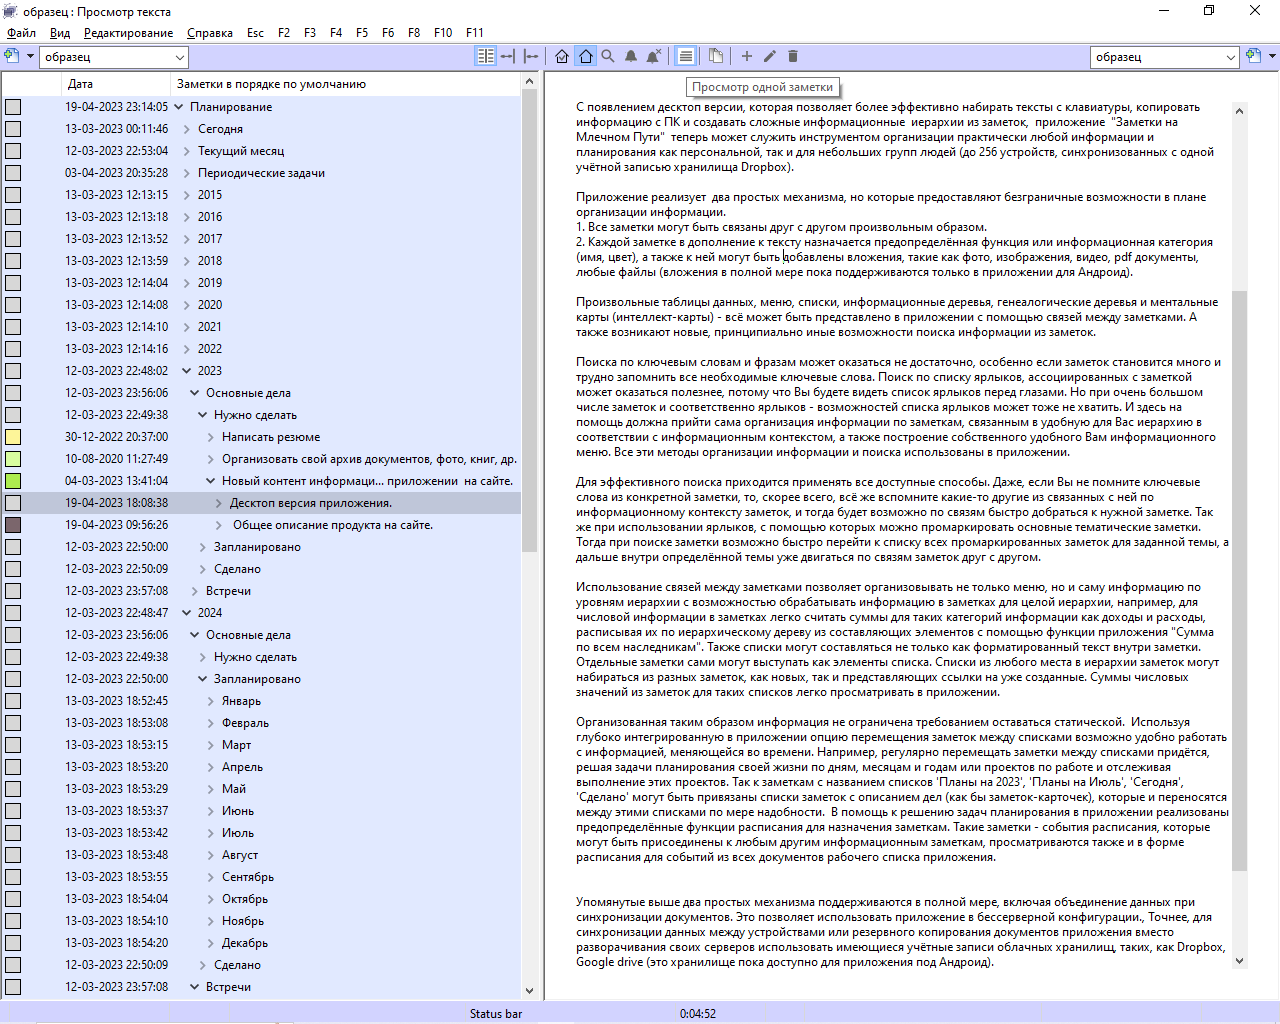 снимок экрана десктоп приложения с деревом из заметок слева и развёрнутым текстом одной заметки справа